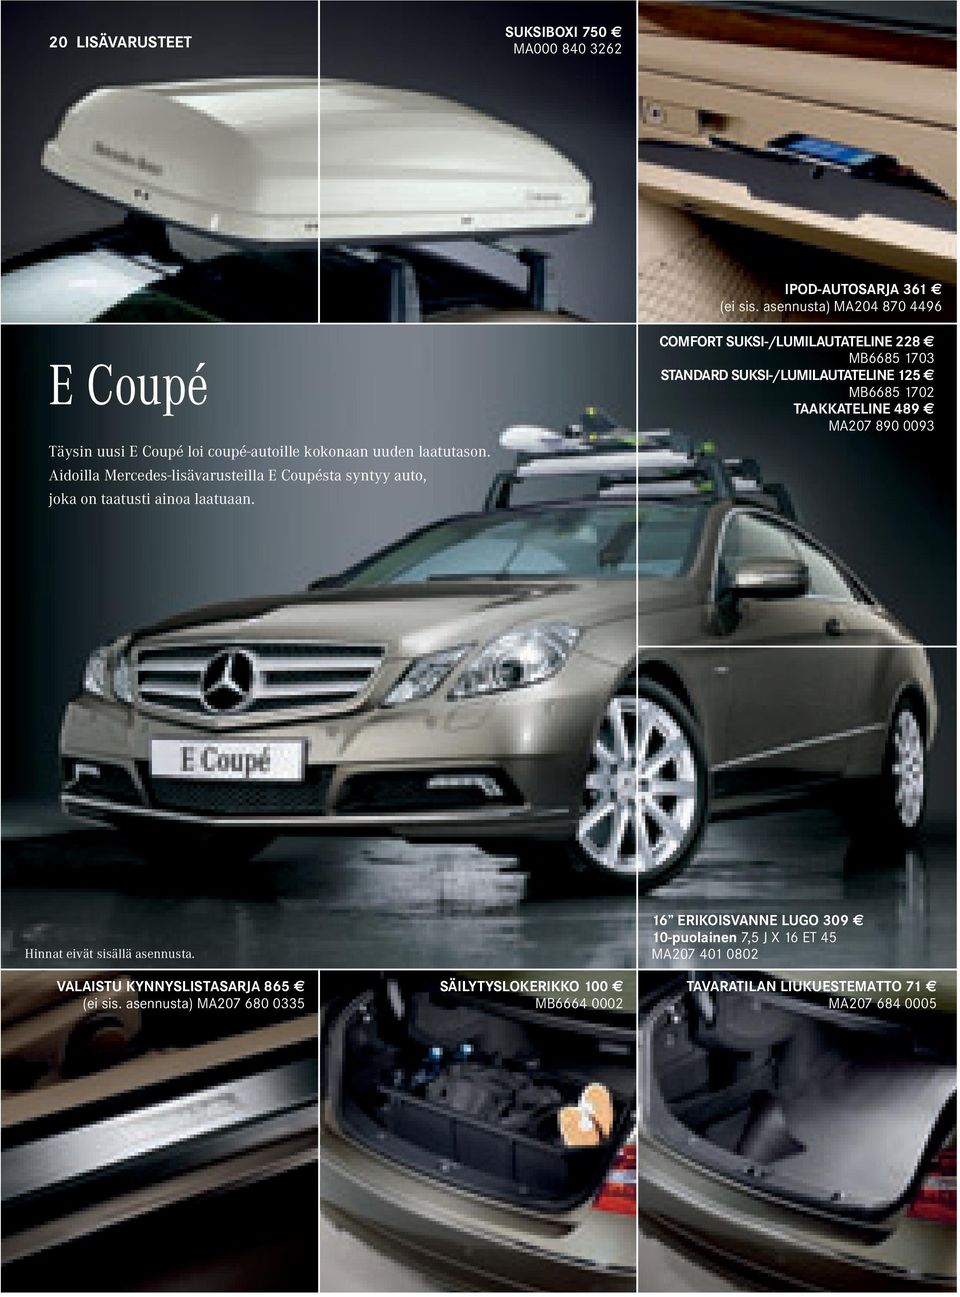 Aidoilla Mercedes-lisävarusteilla E Coupésta syntyy auto, joka on taatusti ainoa laatuaan.